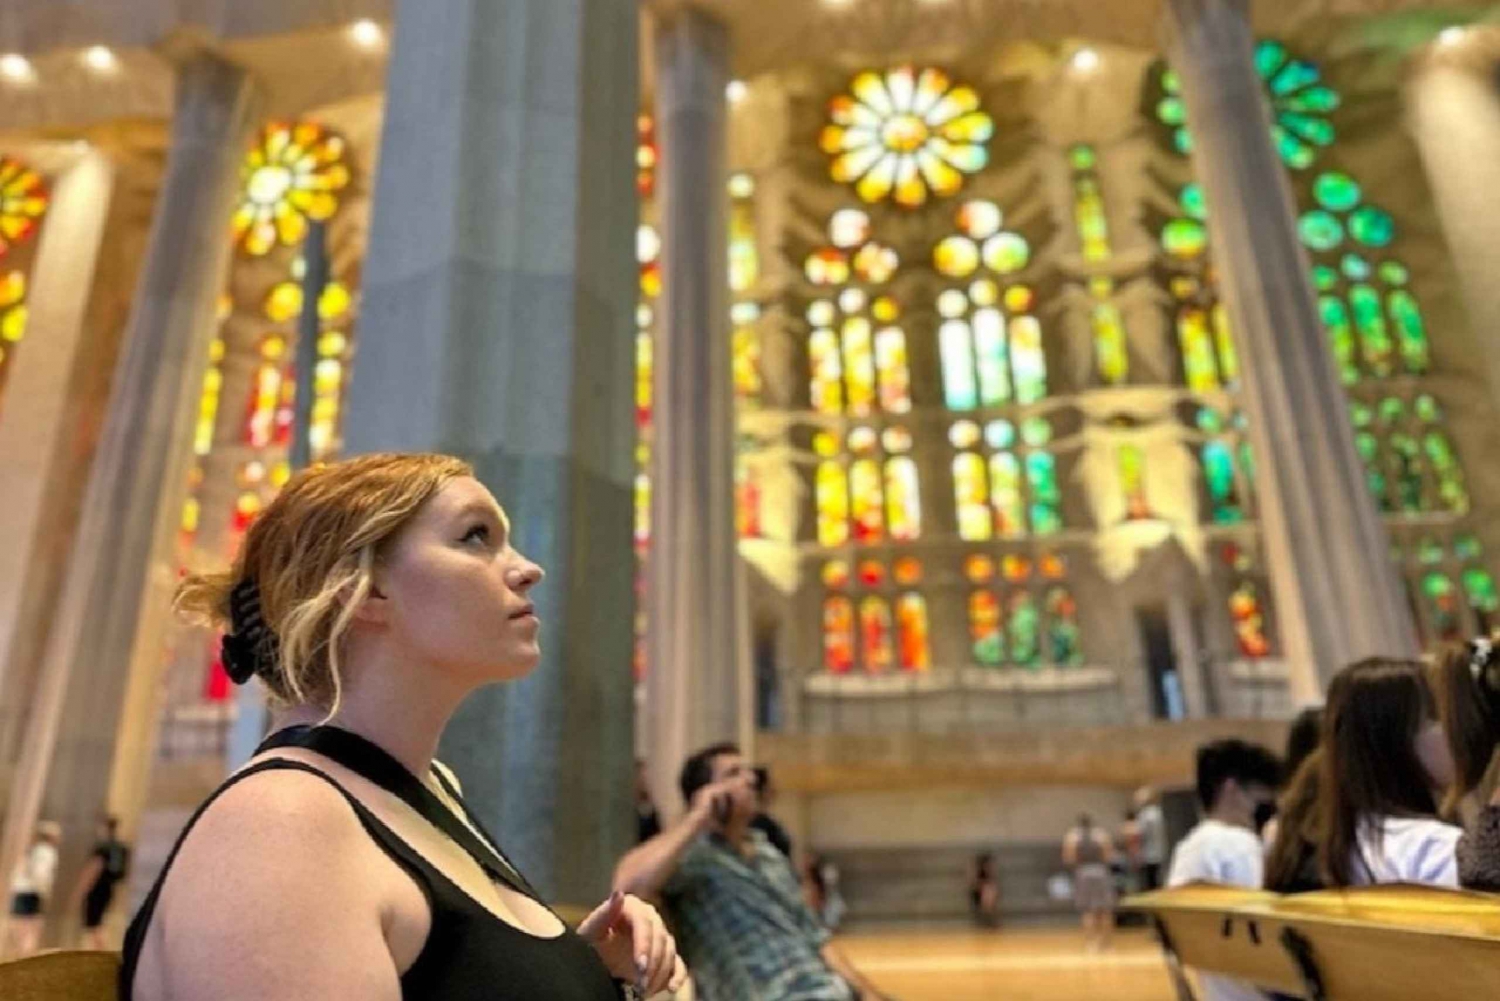 Barcelone : Visite de la Sagrada Família avec accès en coupe-file